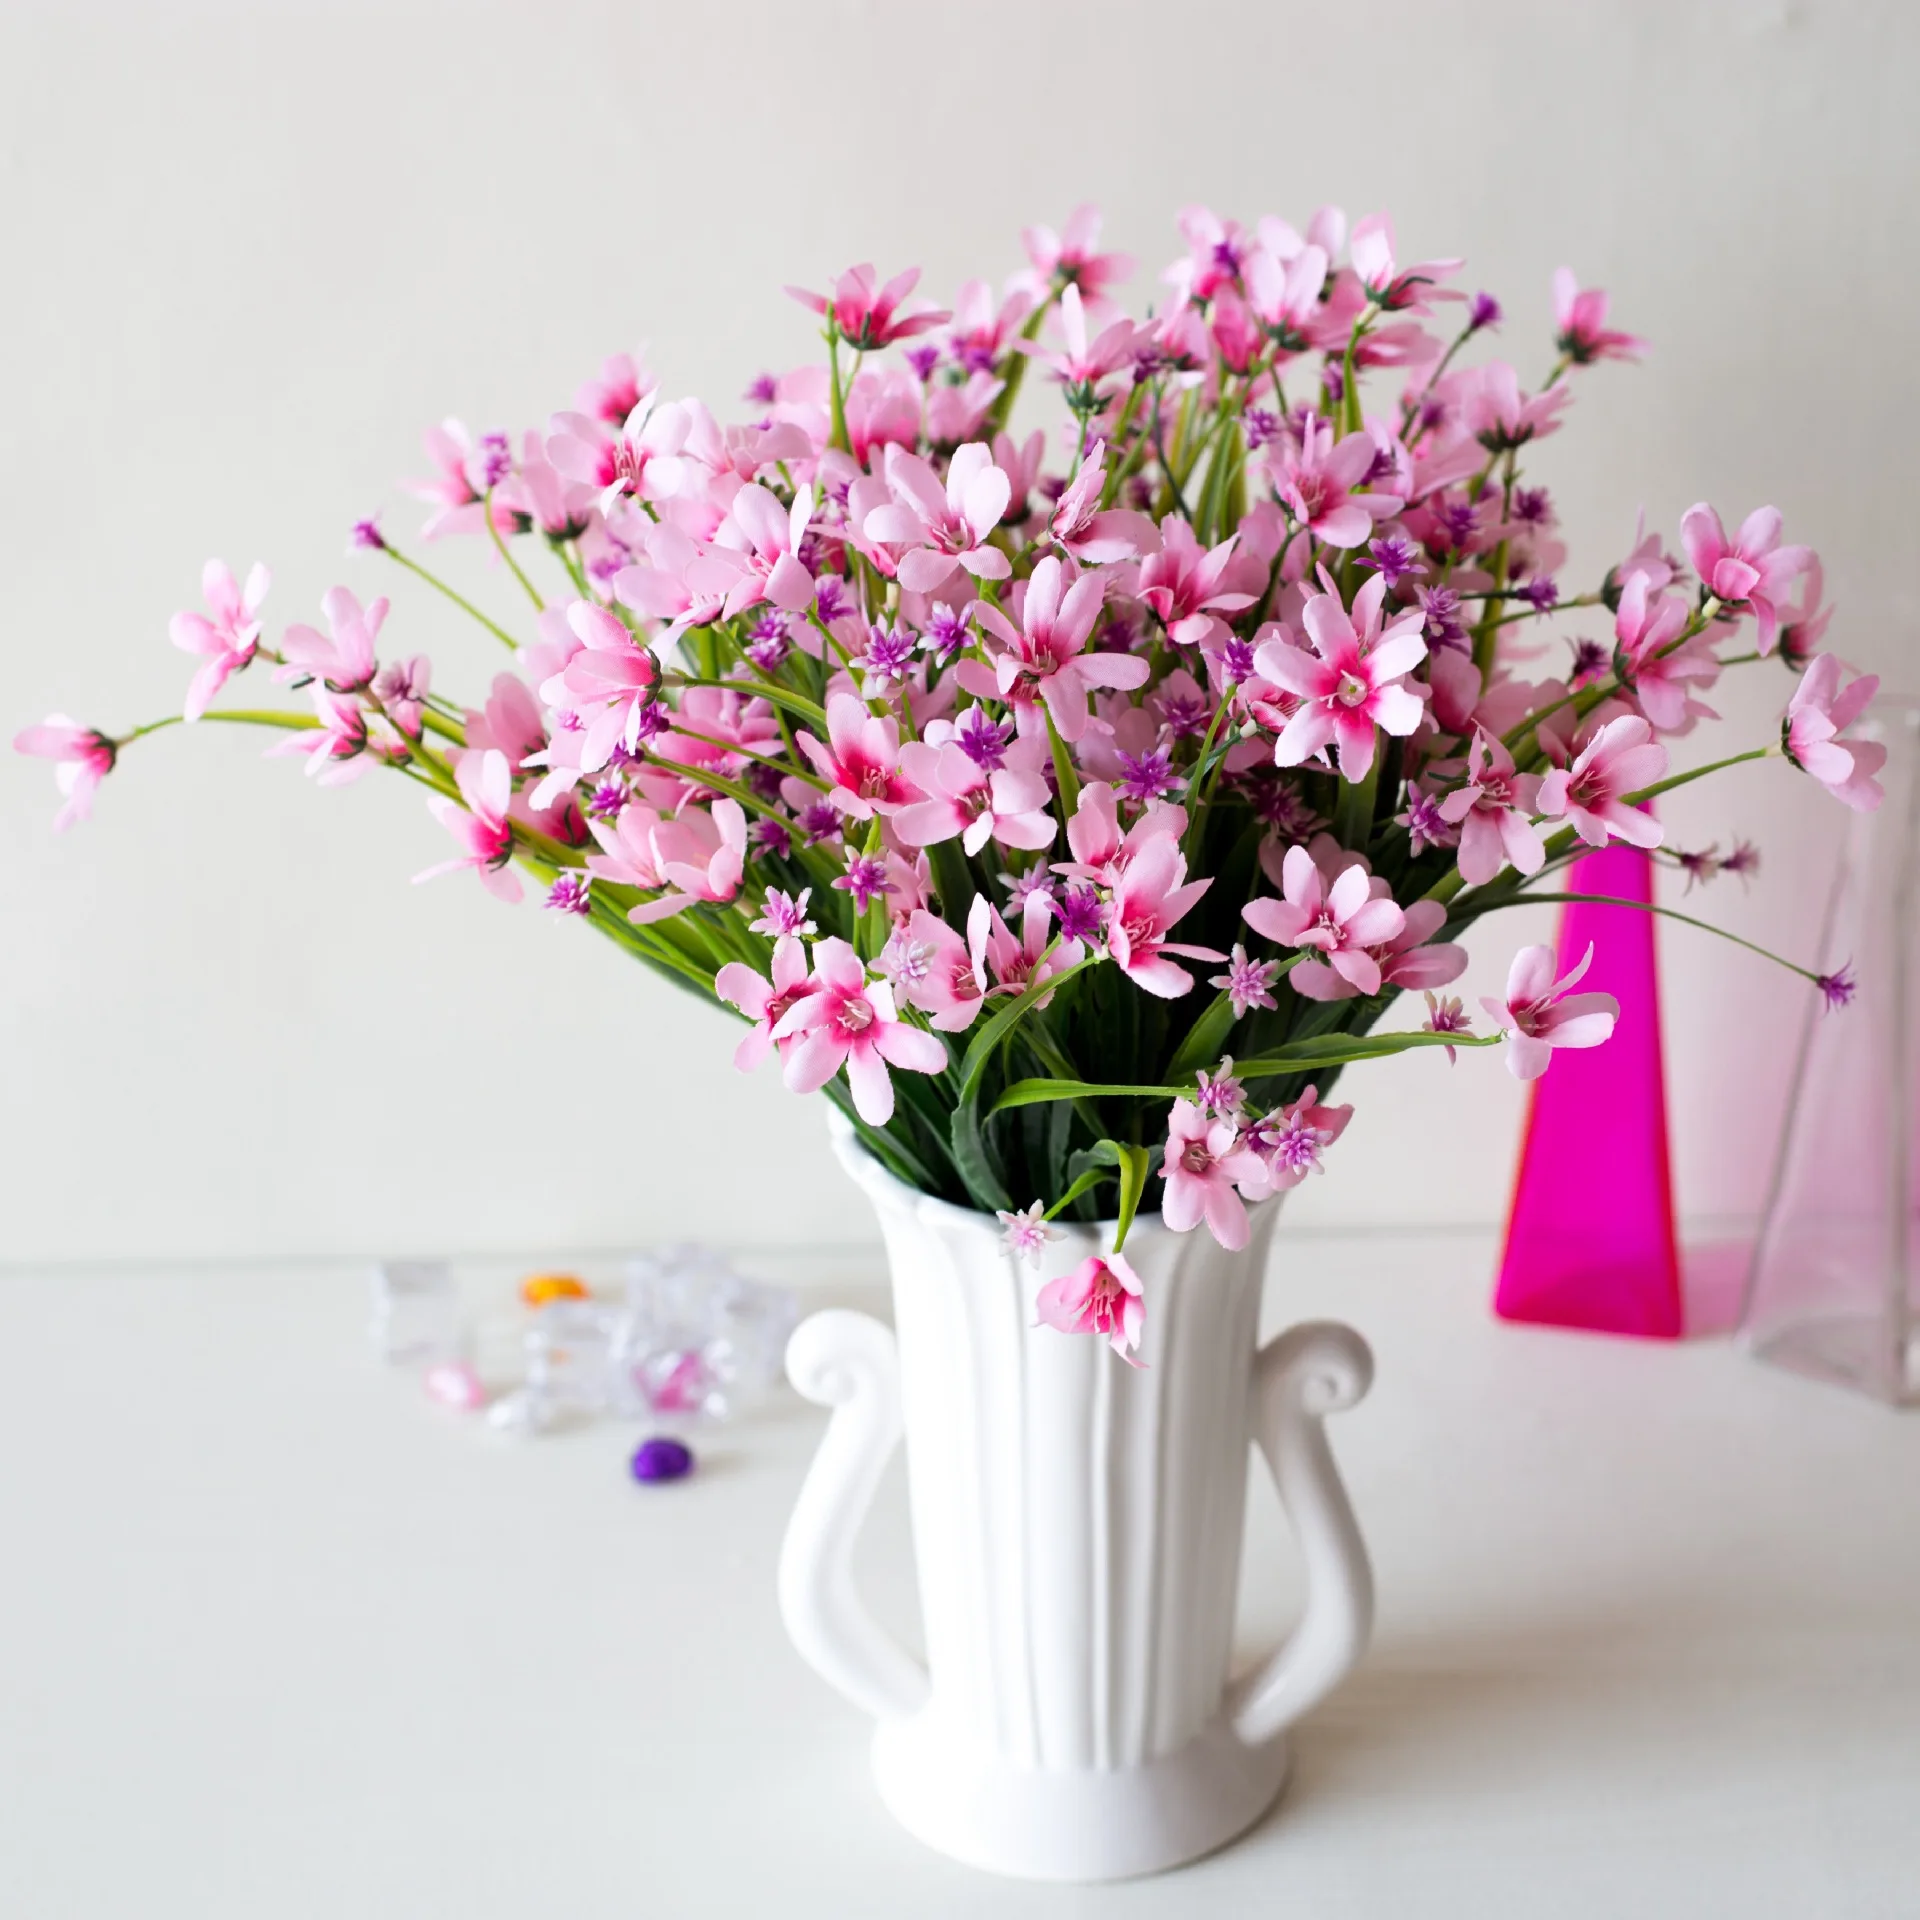 Miisoon 1 пучок искусственного пластика Орхидеи Завод искусственный цветок из шелка свадебный цветок расположение Свадебные украшения дома - Цвет: Розовый